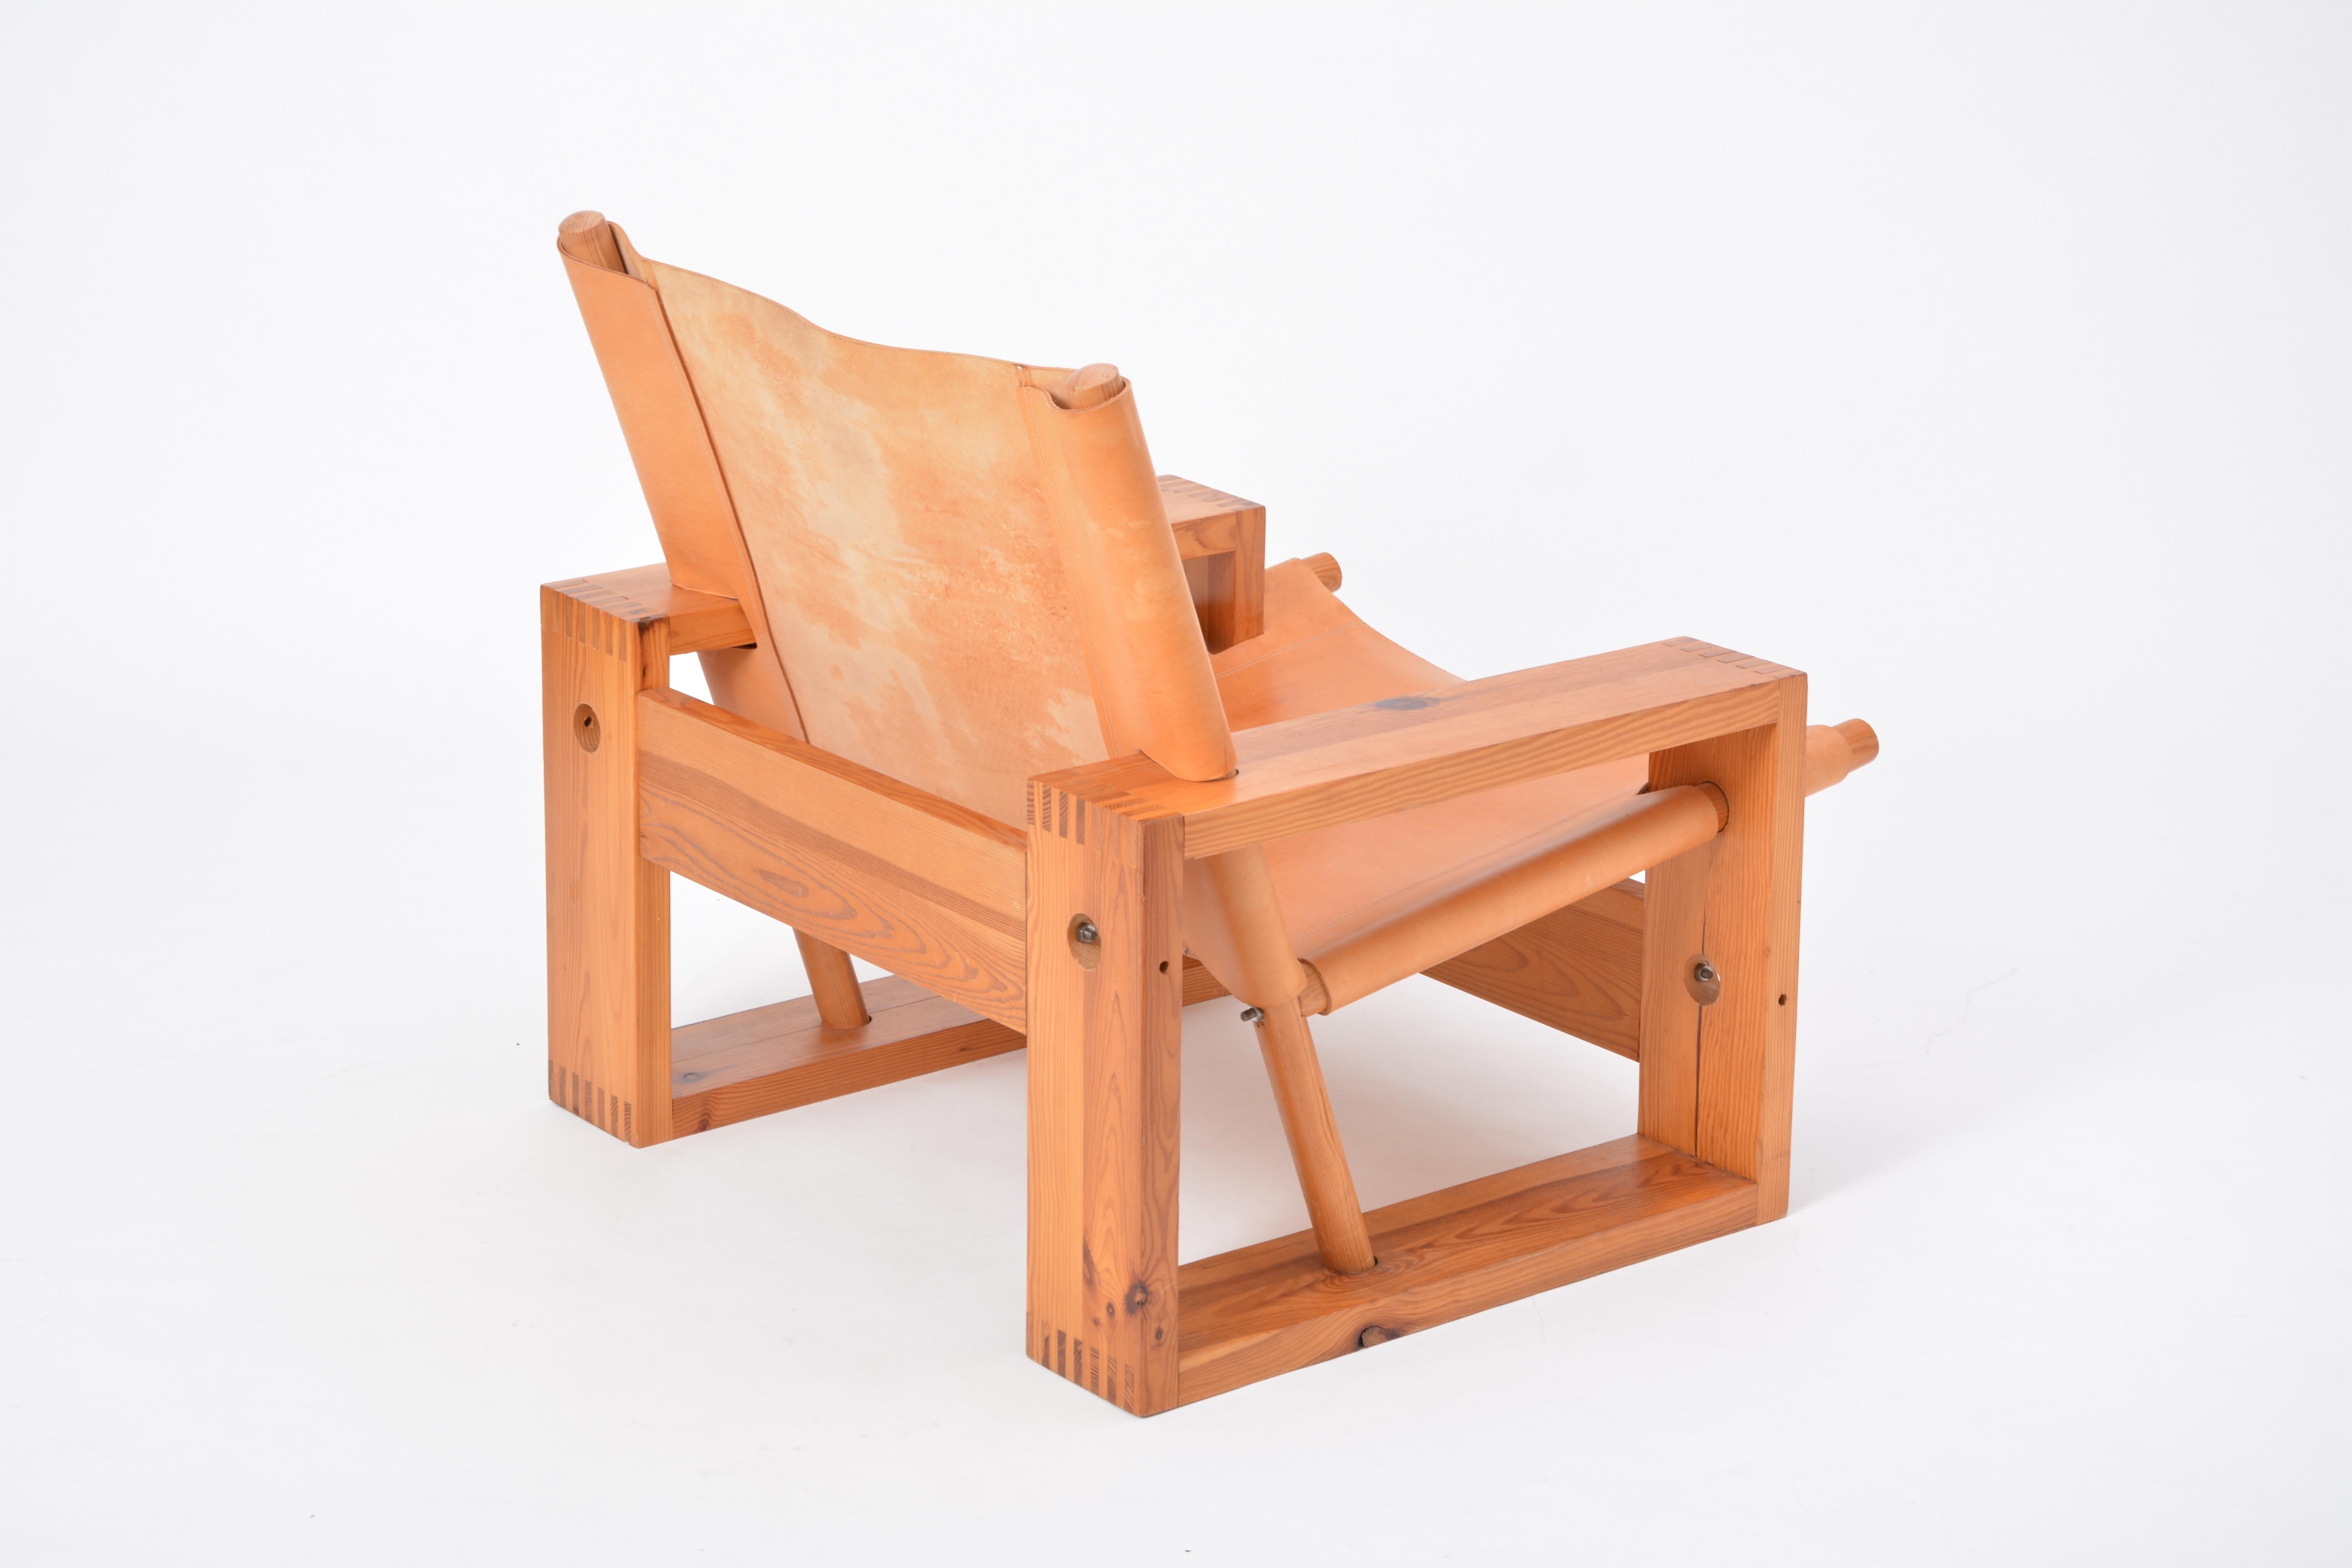 Dutch Mid-Century Modern Easy Chair designed by Ate Van Apeldoorn (20. Jahrhundert)